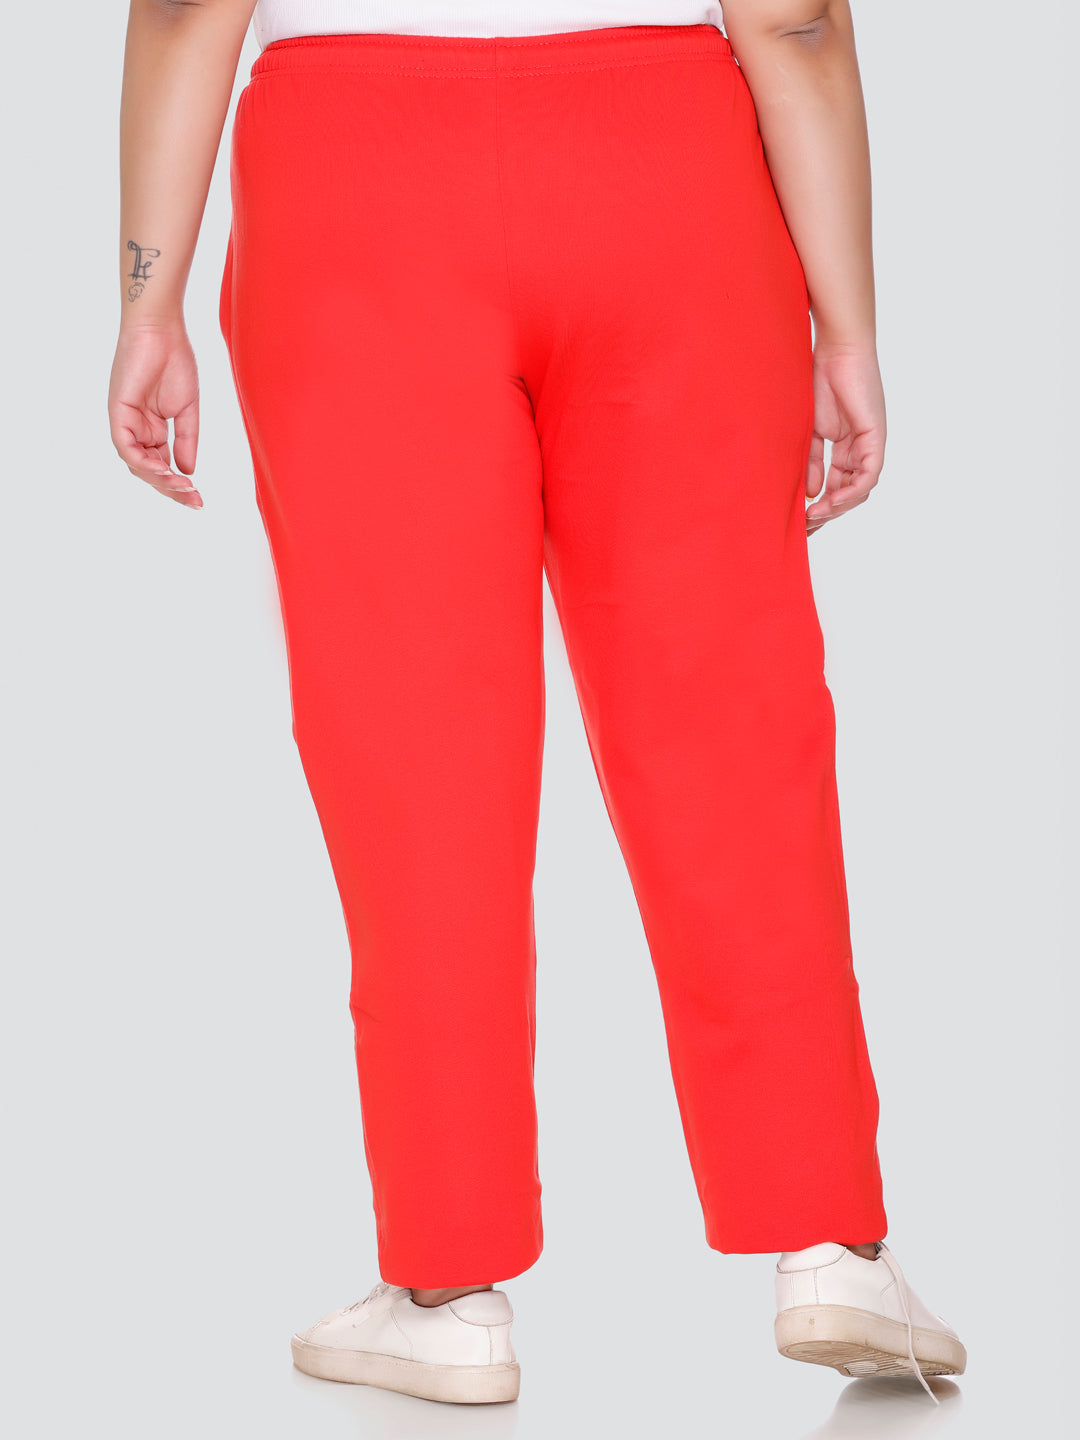 Asics Women's Alana Athletic Pants, Several Colors – Fanletic